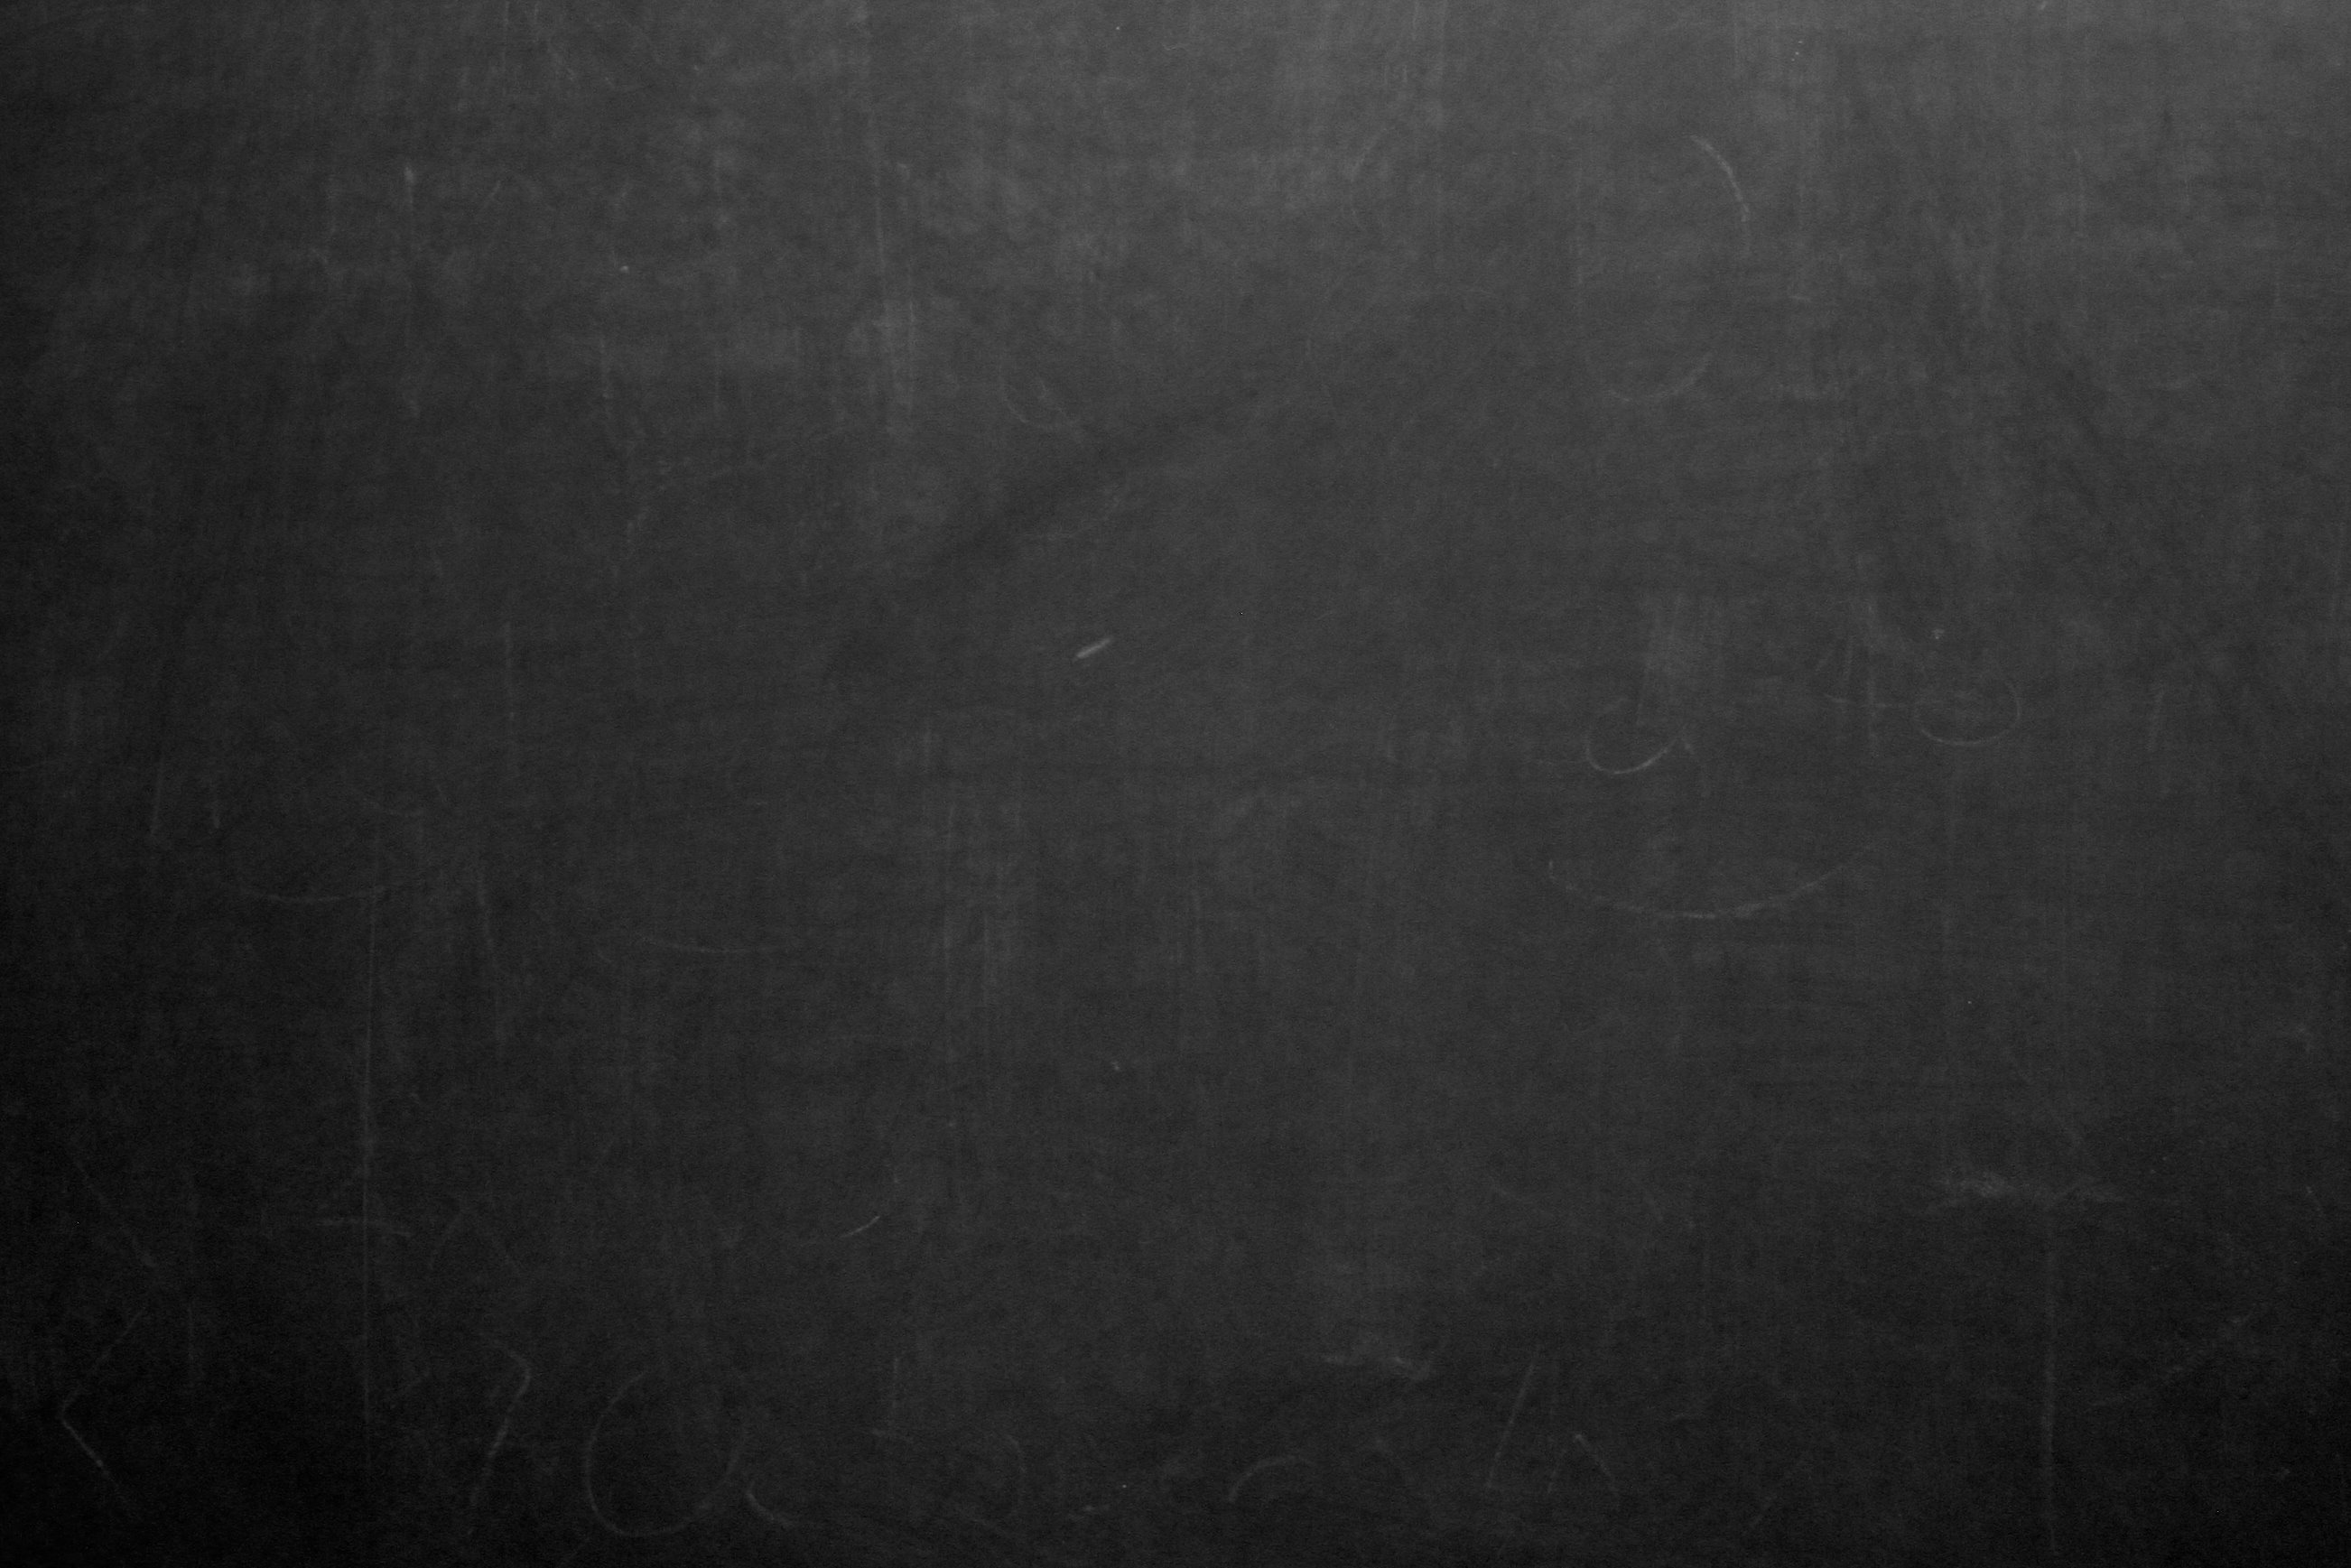  Chalkboard  Backgrounds  Free Download PixelsTalk Net